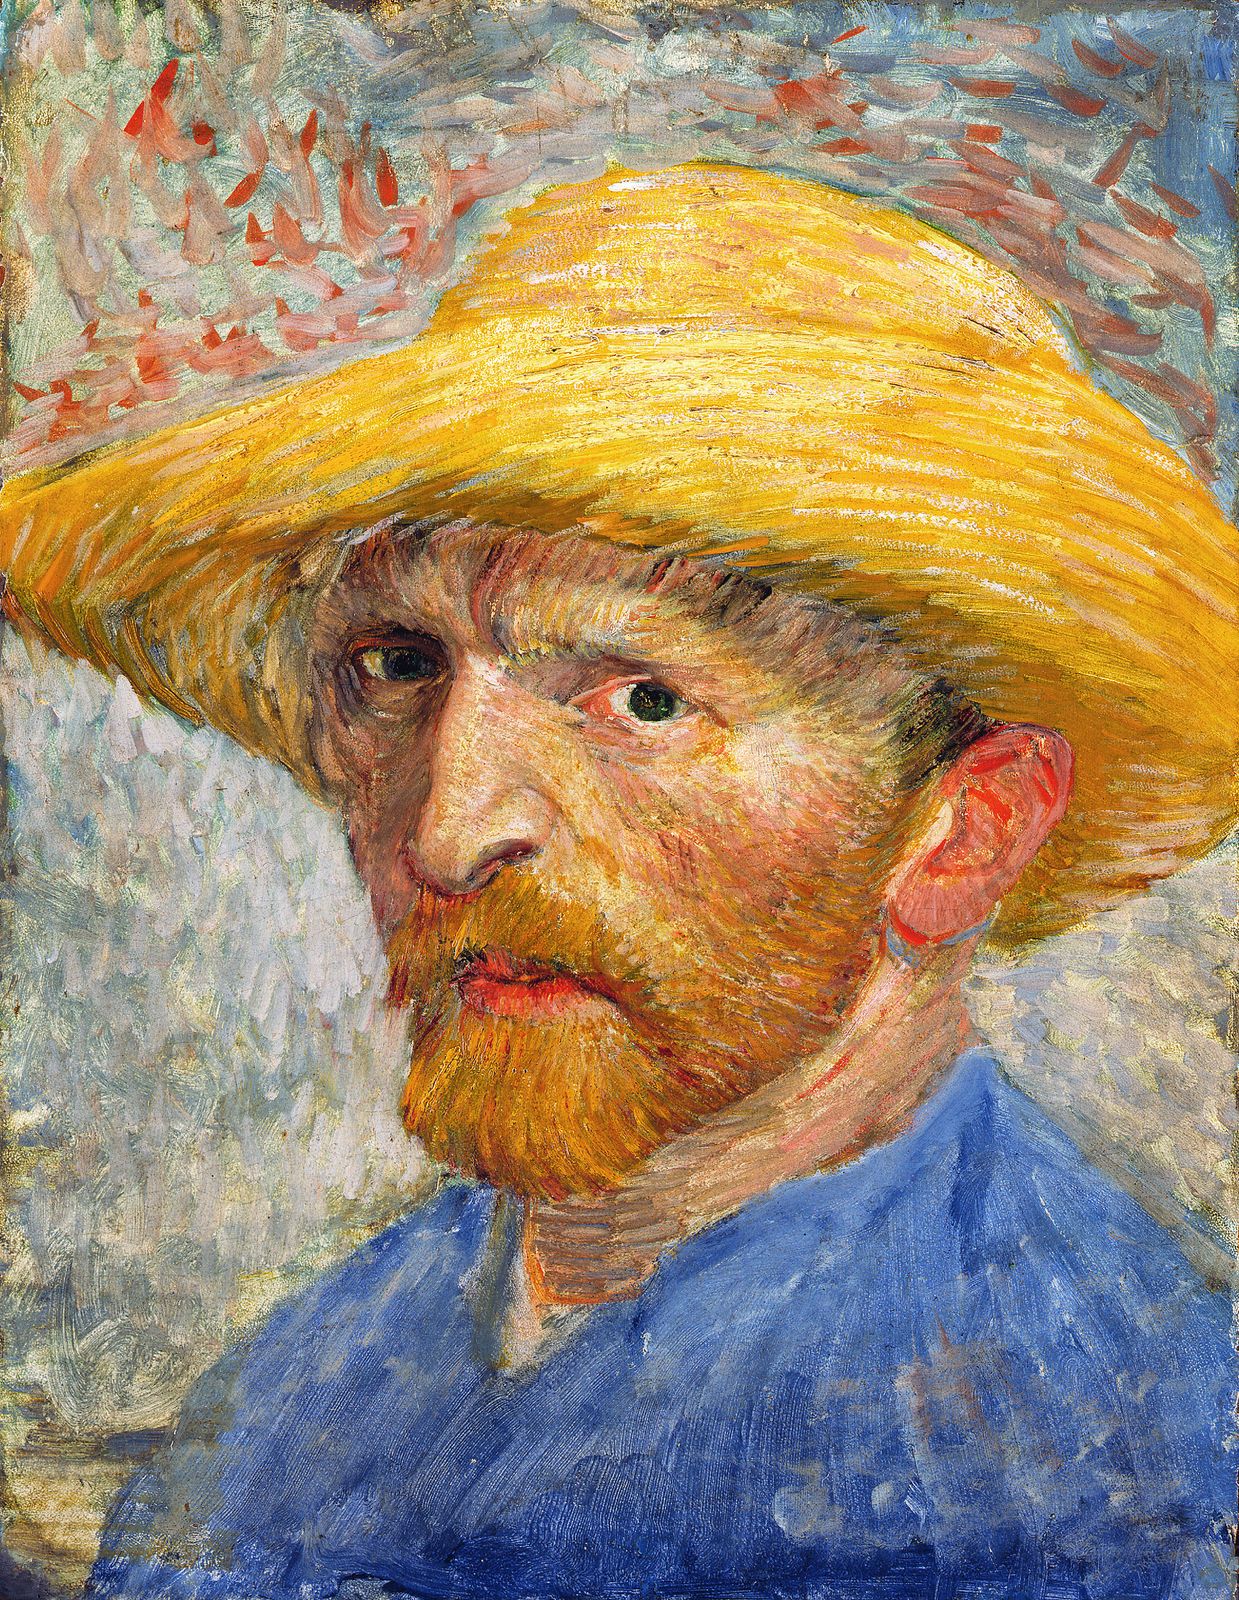 Винсент Ван Гог - Автопортрет в соломенной шляпе